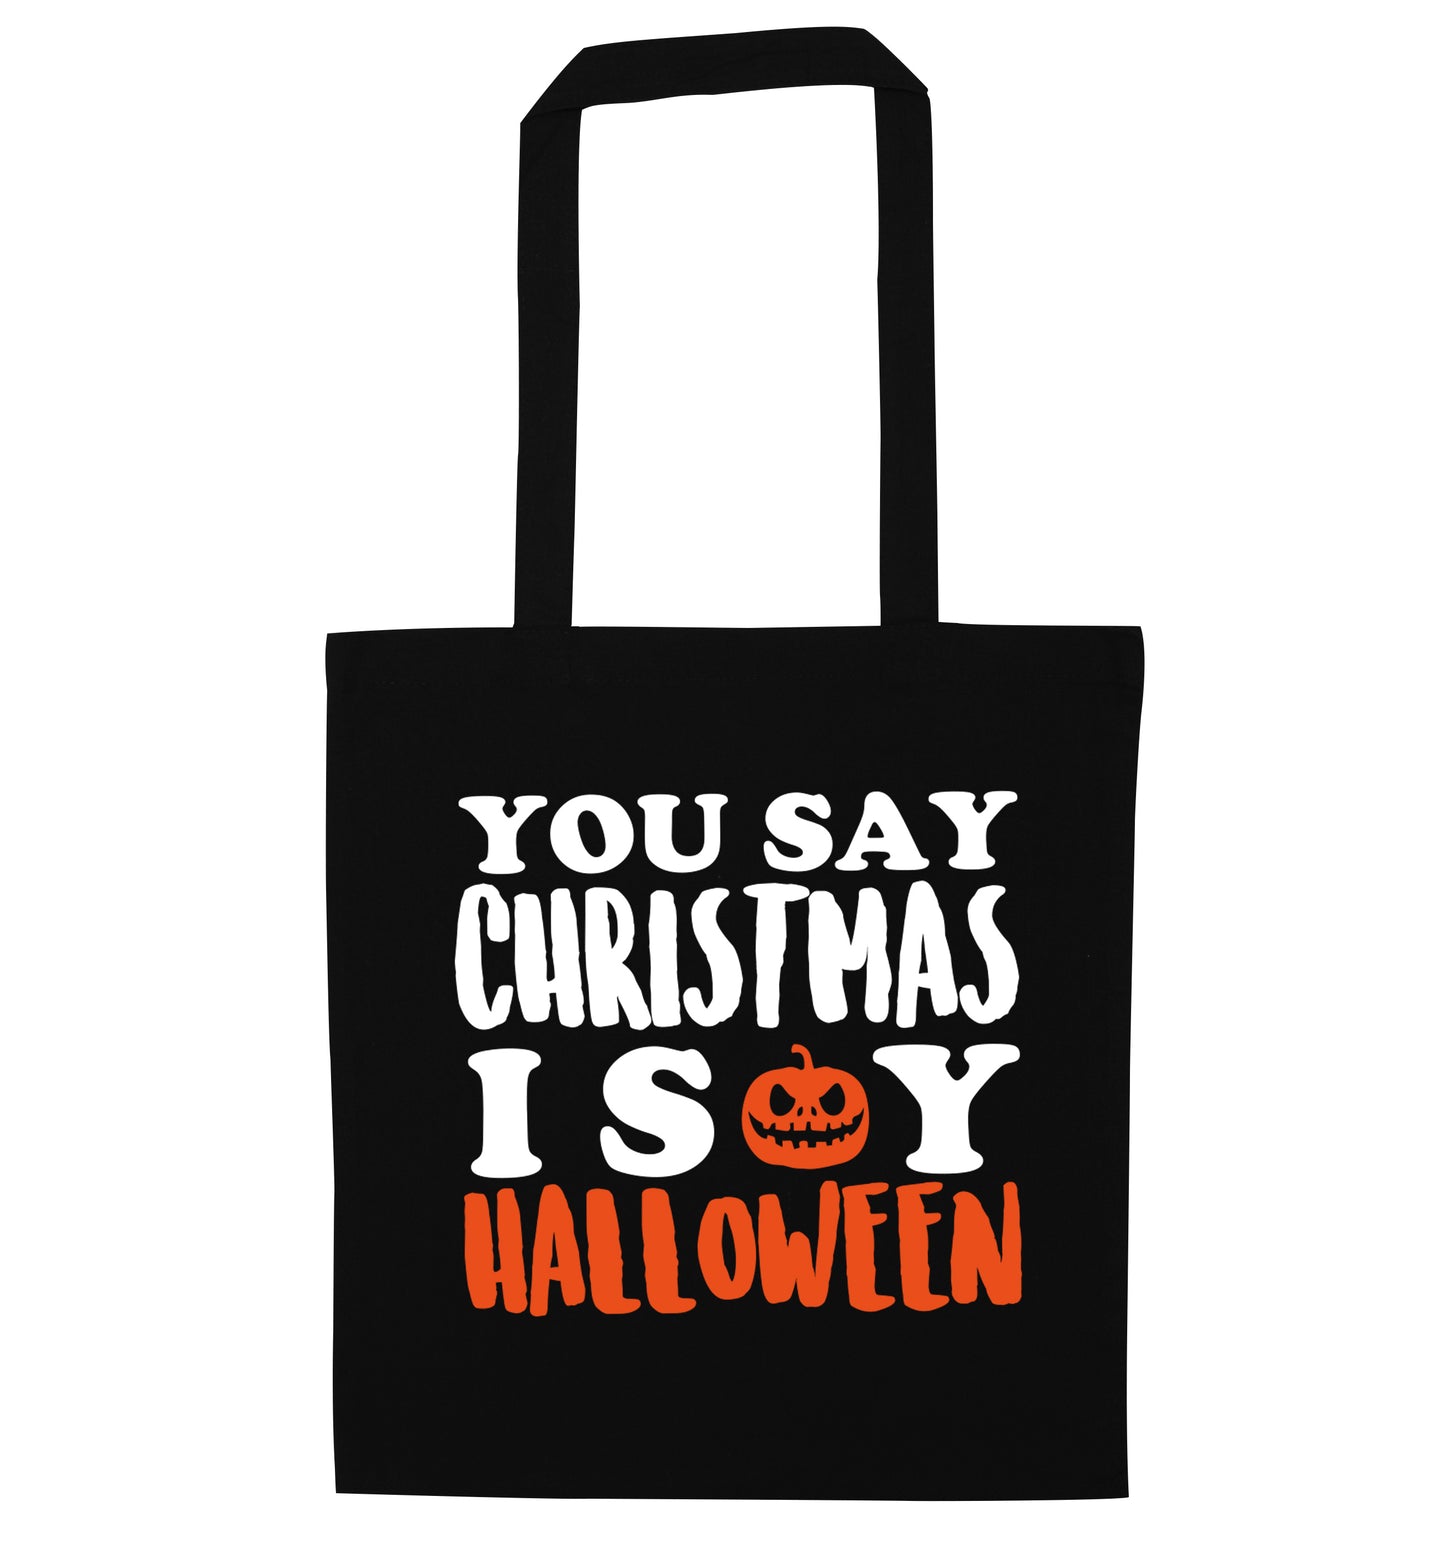 You say christmas I say halloween! black tote bag